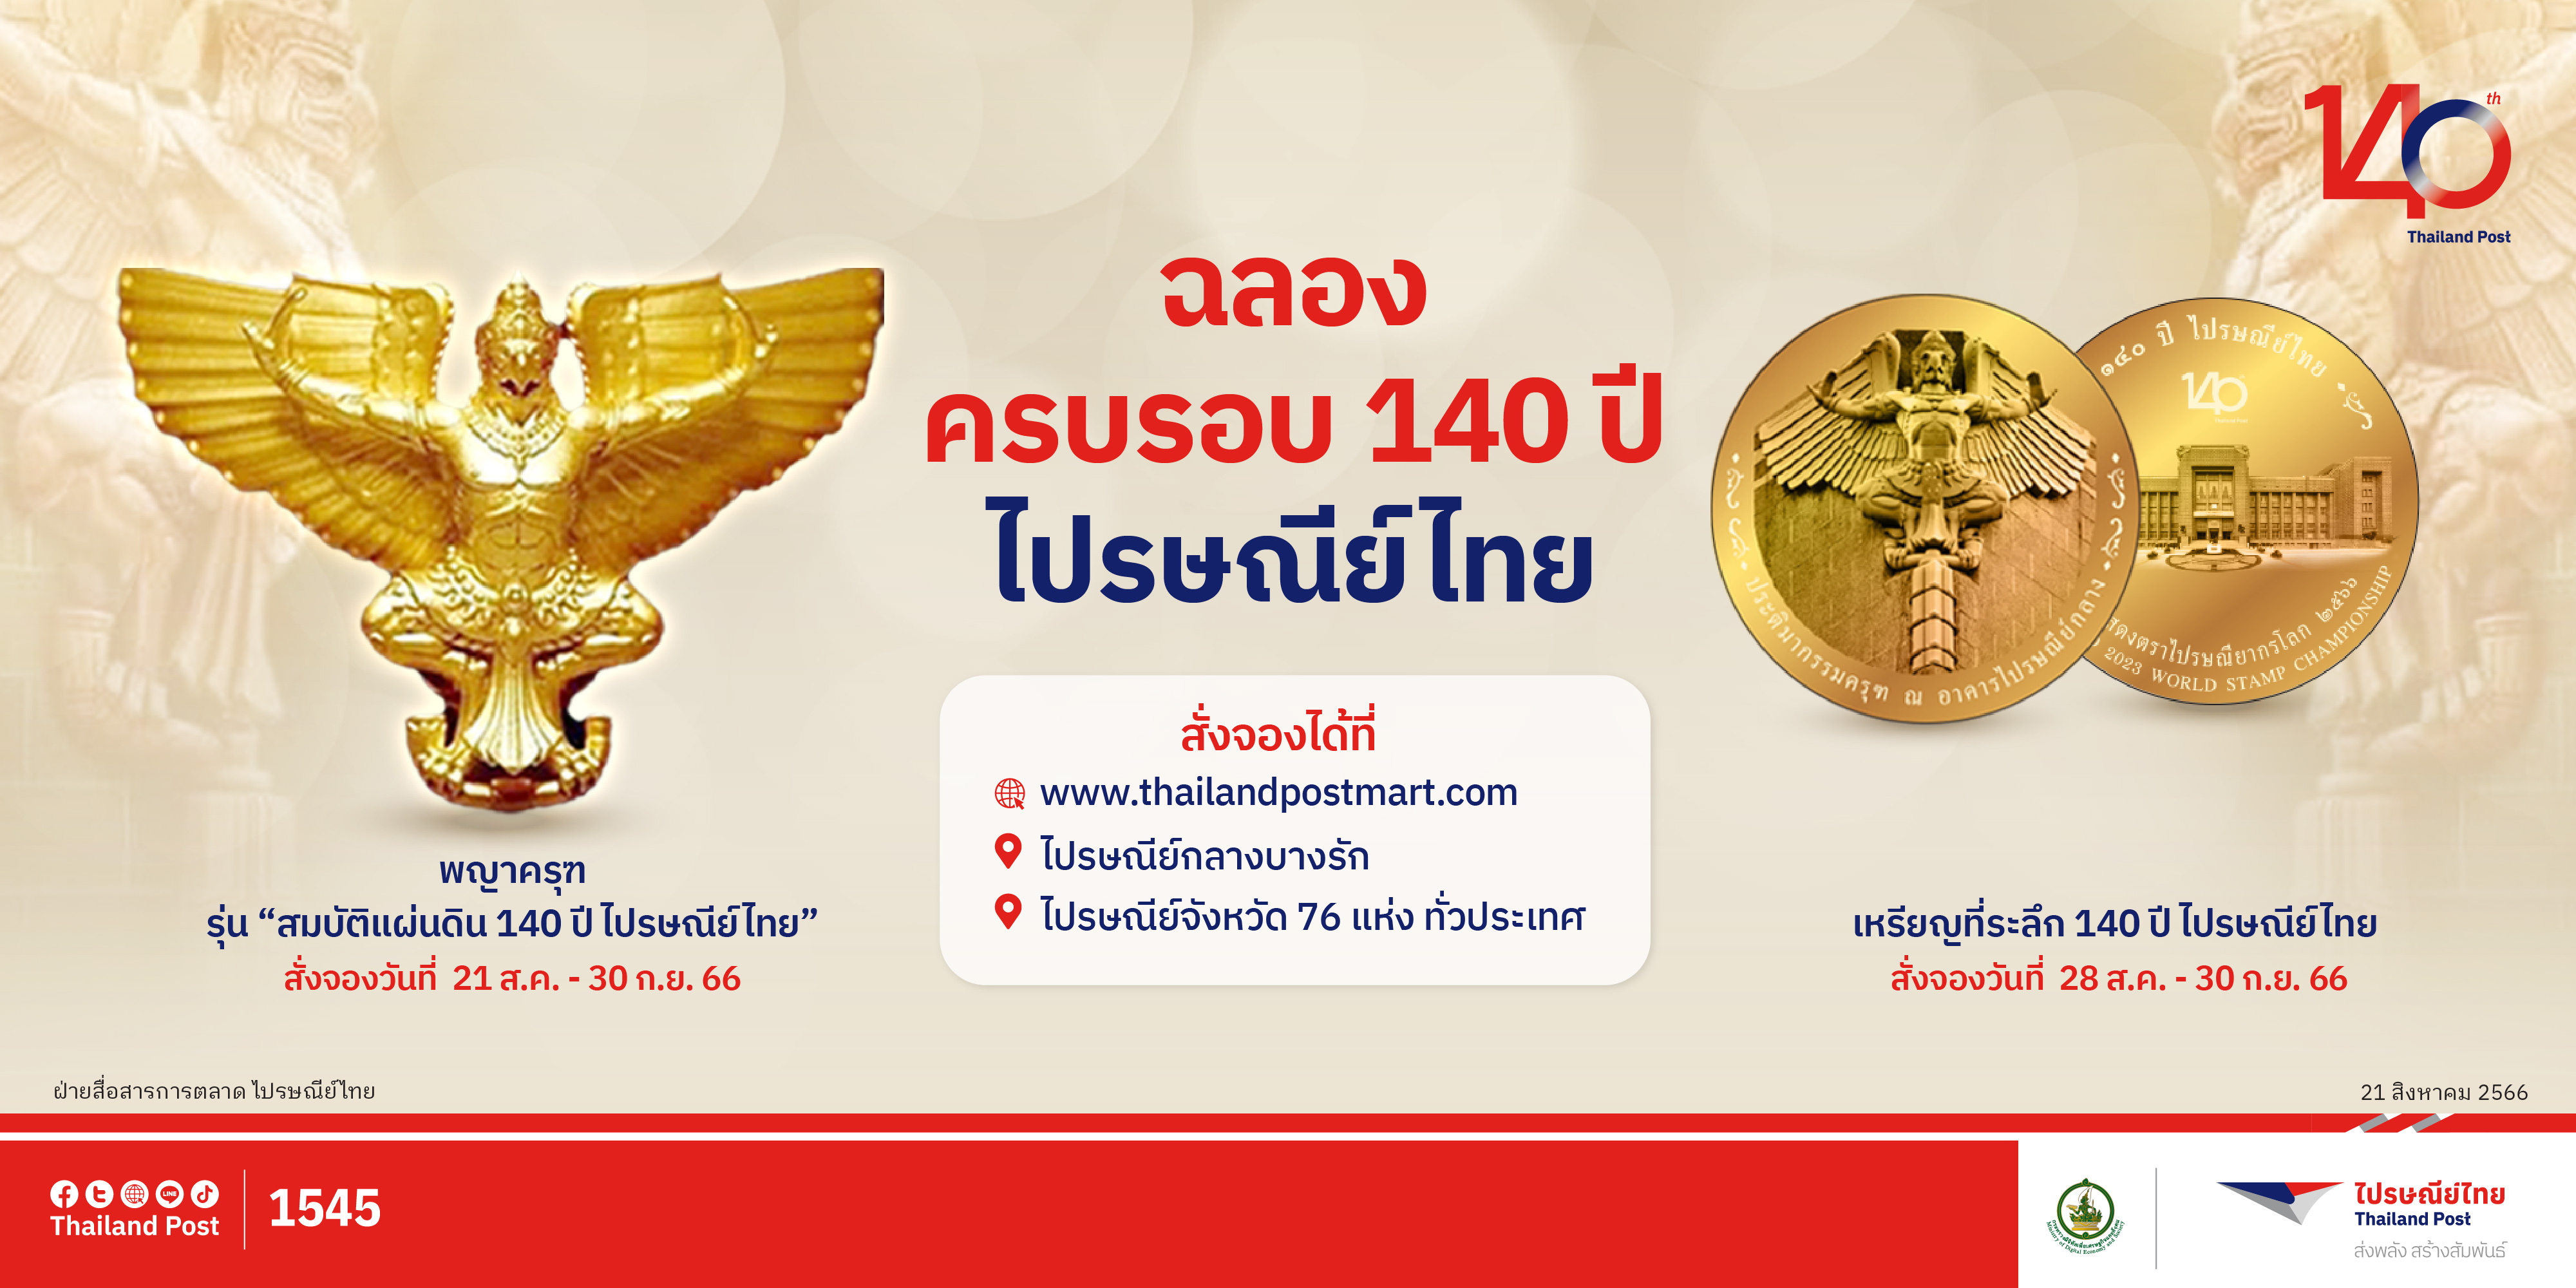 ฉลอง 140 ปี ไปรษณีย์ไทย เปิดจองวัตถุมงคลพญาครุฑ รุ่น “สมบัติแผ่นดินฯ”และเหรียญที่ระลึกฯ จองได้ที่ ThailandPostMart และไปรษณีย์จังหวัดทั่วประเทศ